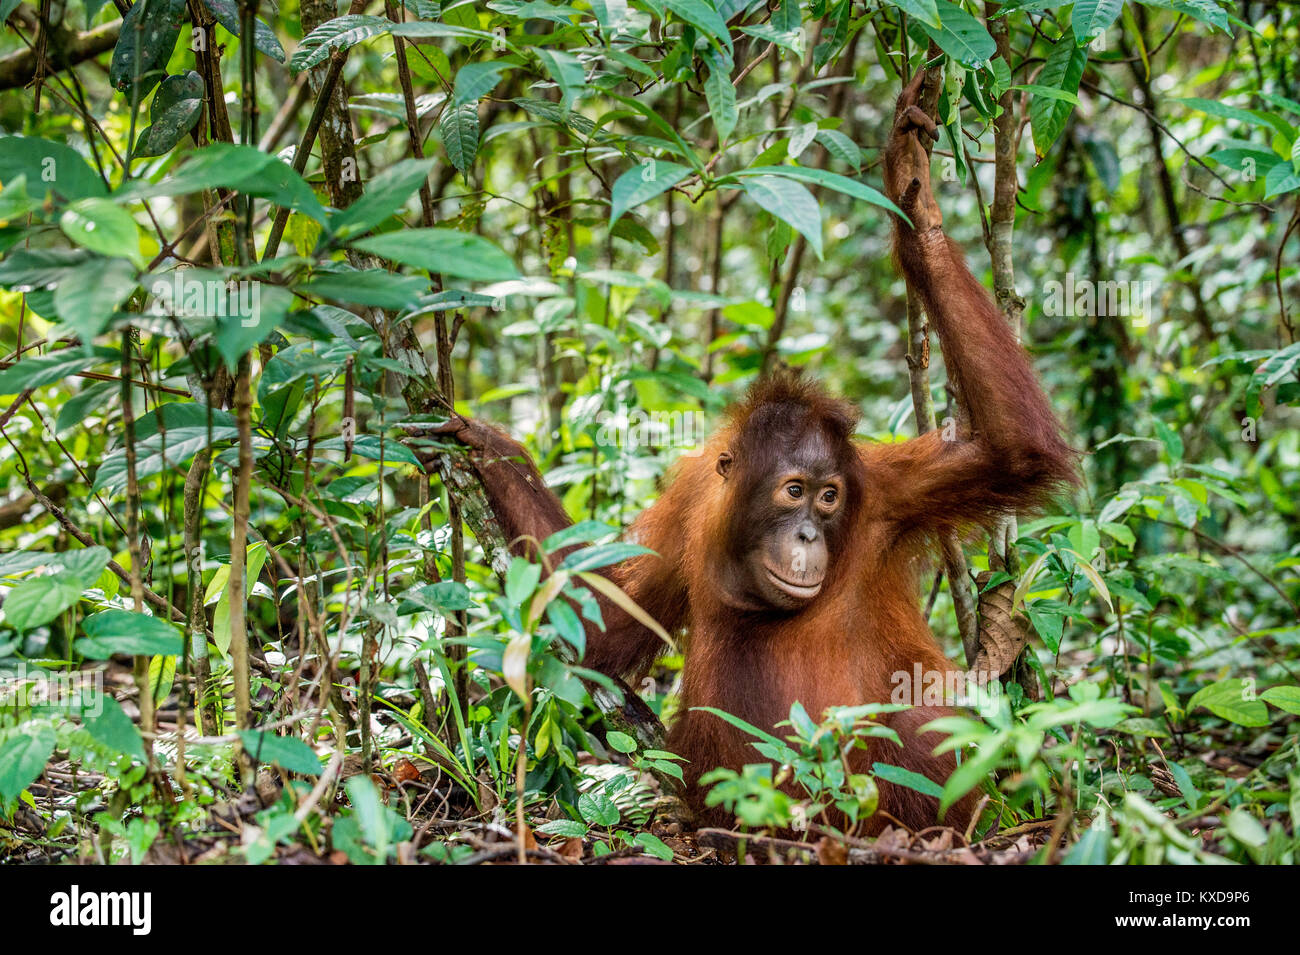 Los menores del Centro Bornean orangután (Pongo pygmaeus wurmbii ) en el hábitat natural. Naturaleza salvaje en la selva tropical de Borneo. Indonesia Foto de stock